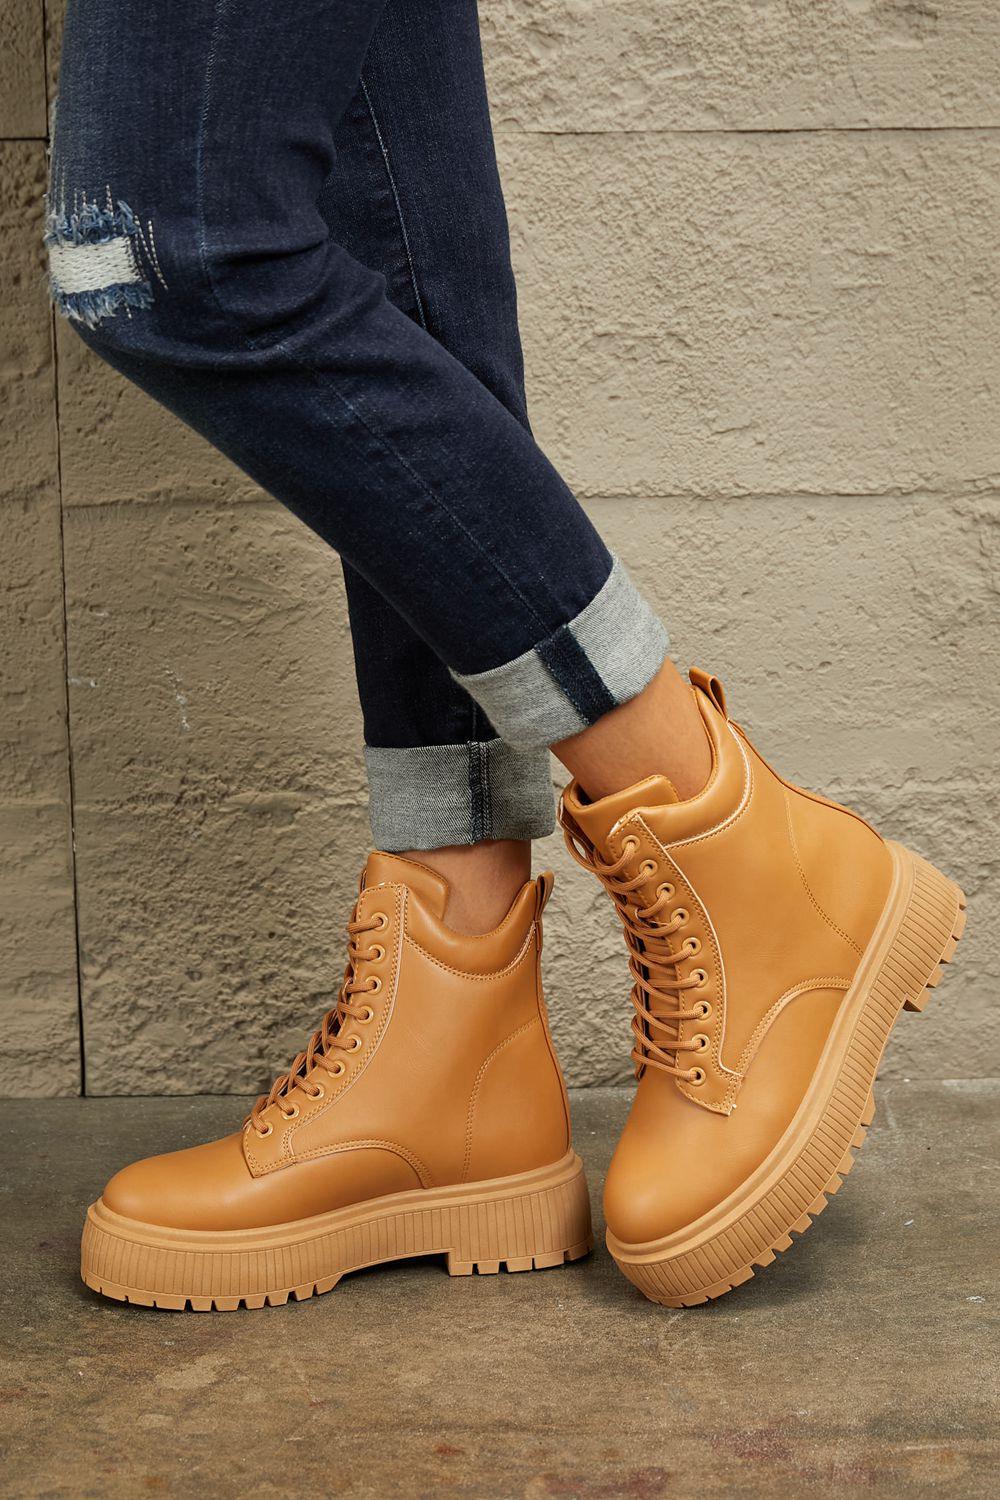 Women's Shoes - Boots East Lion Corp Platform Combat Boots